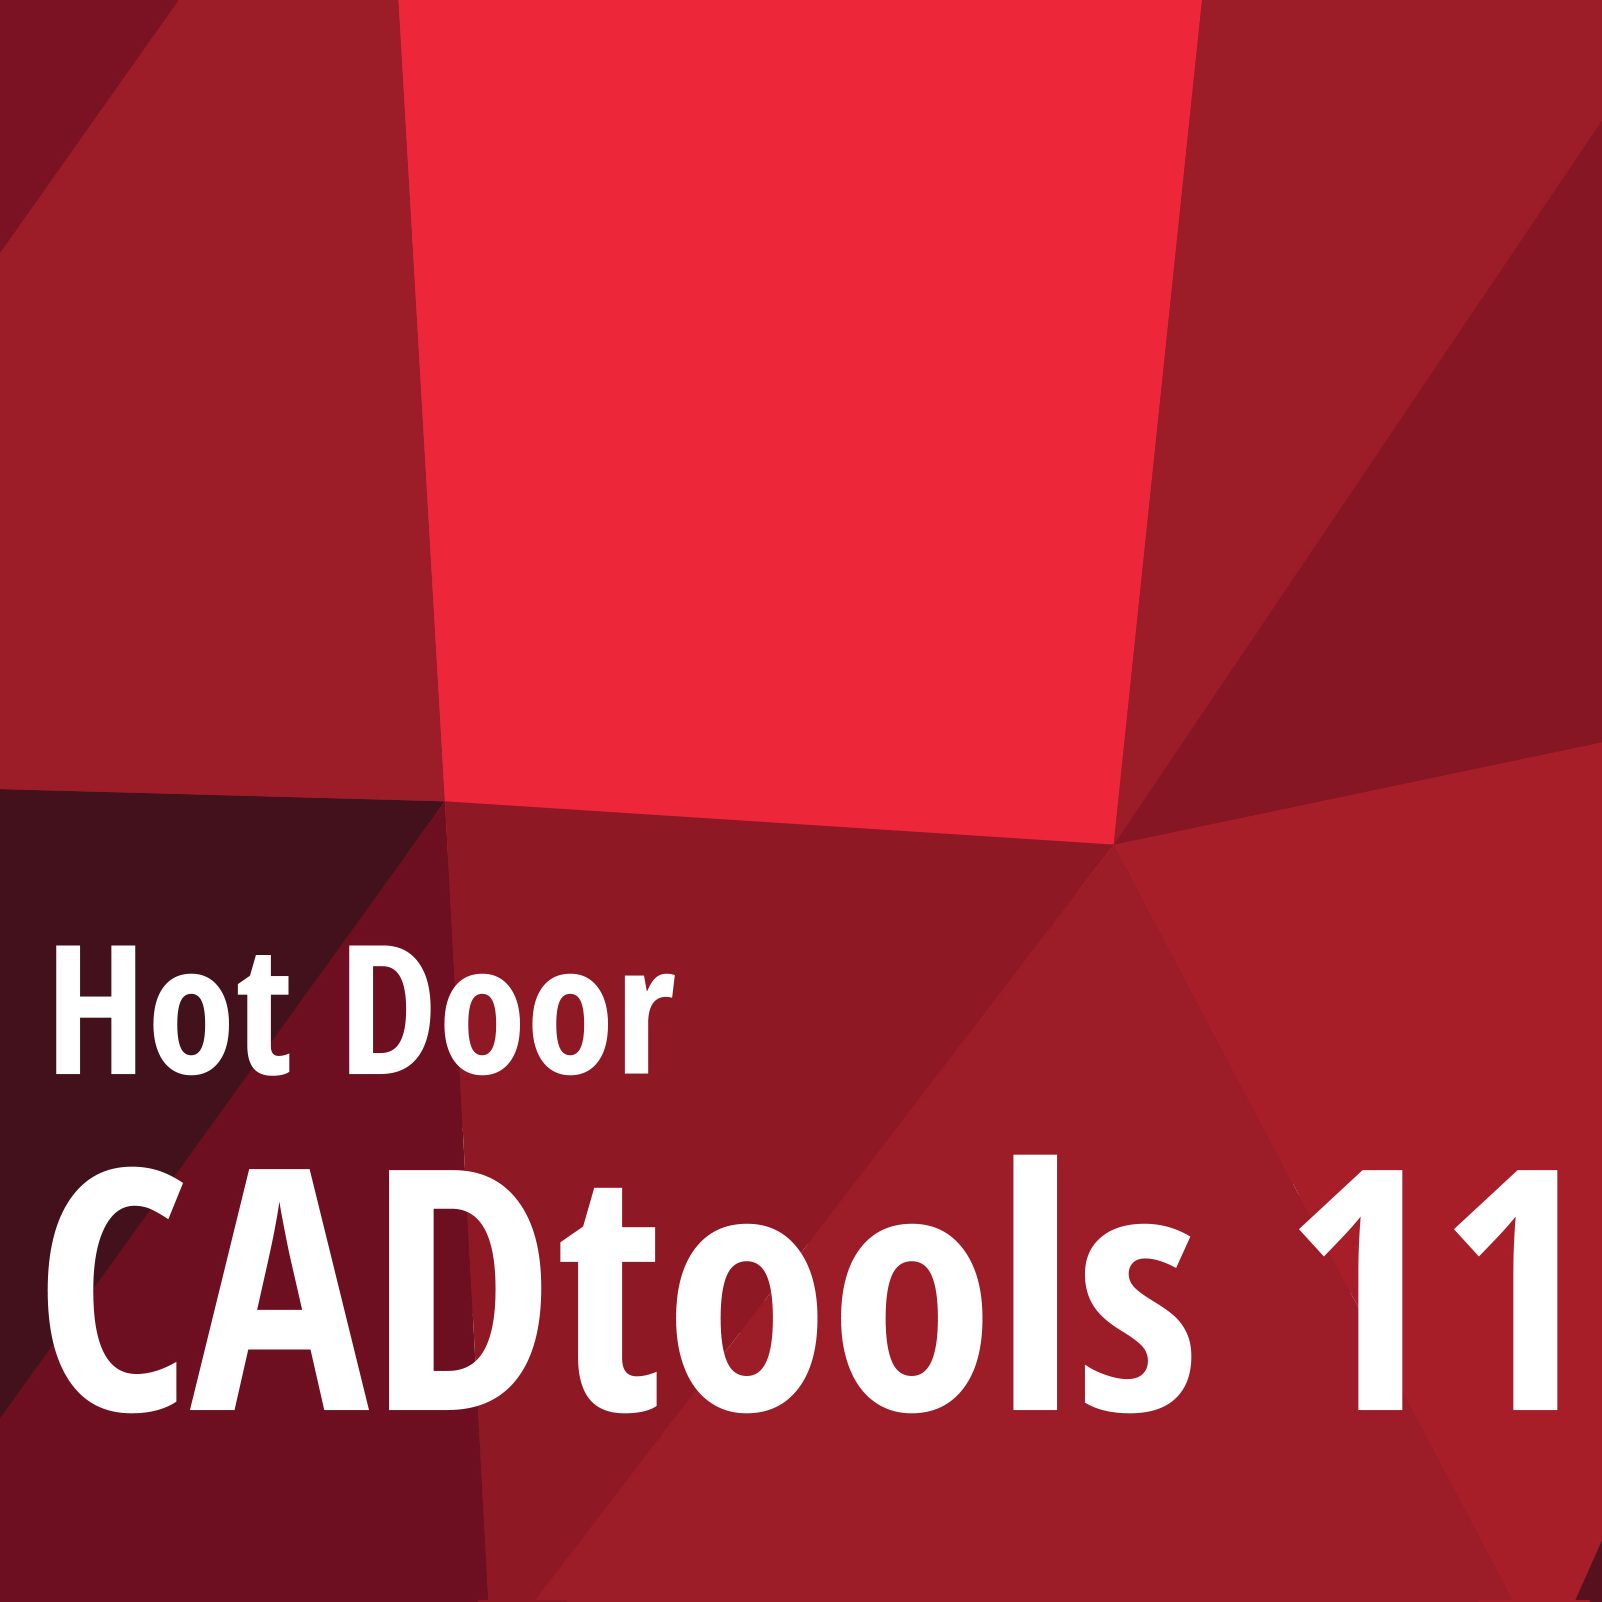 cad tools for mac